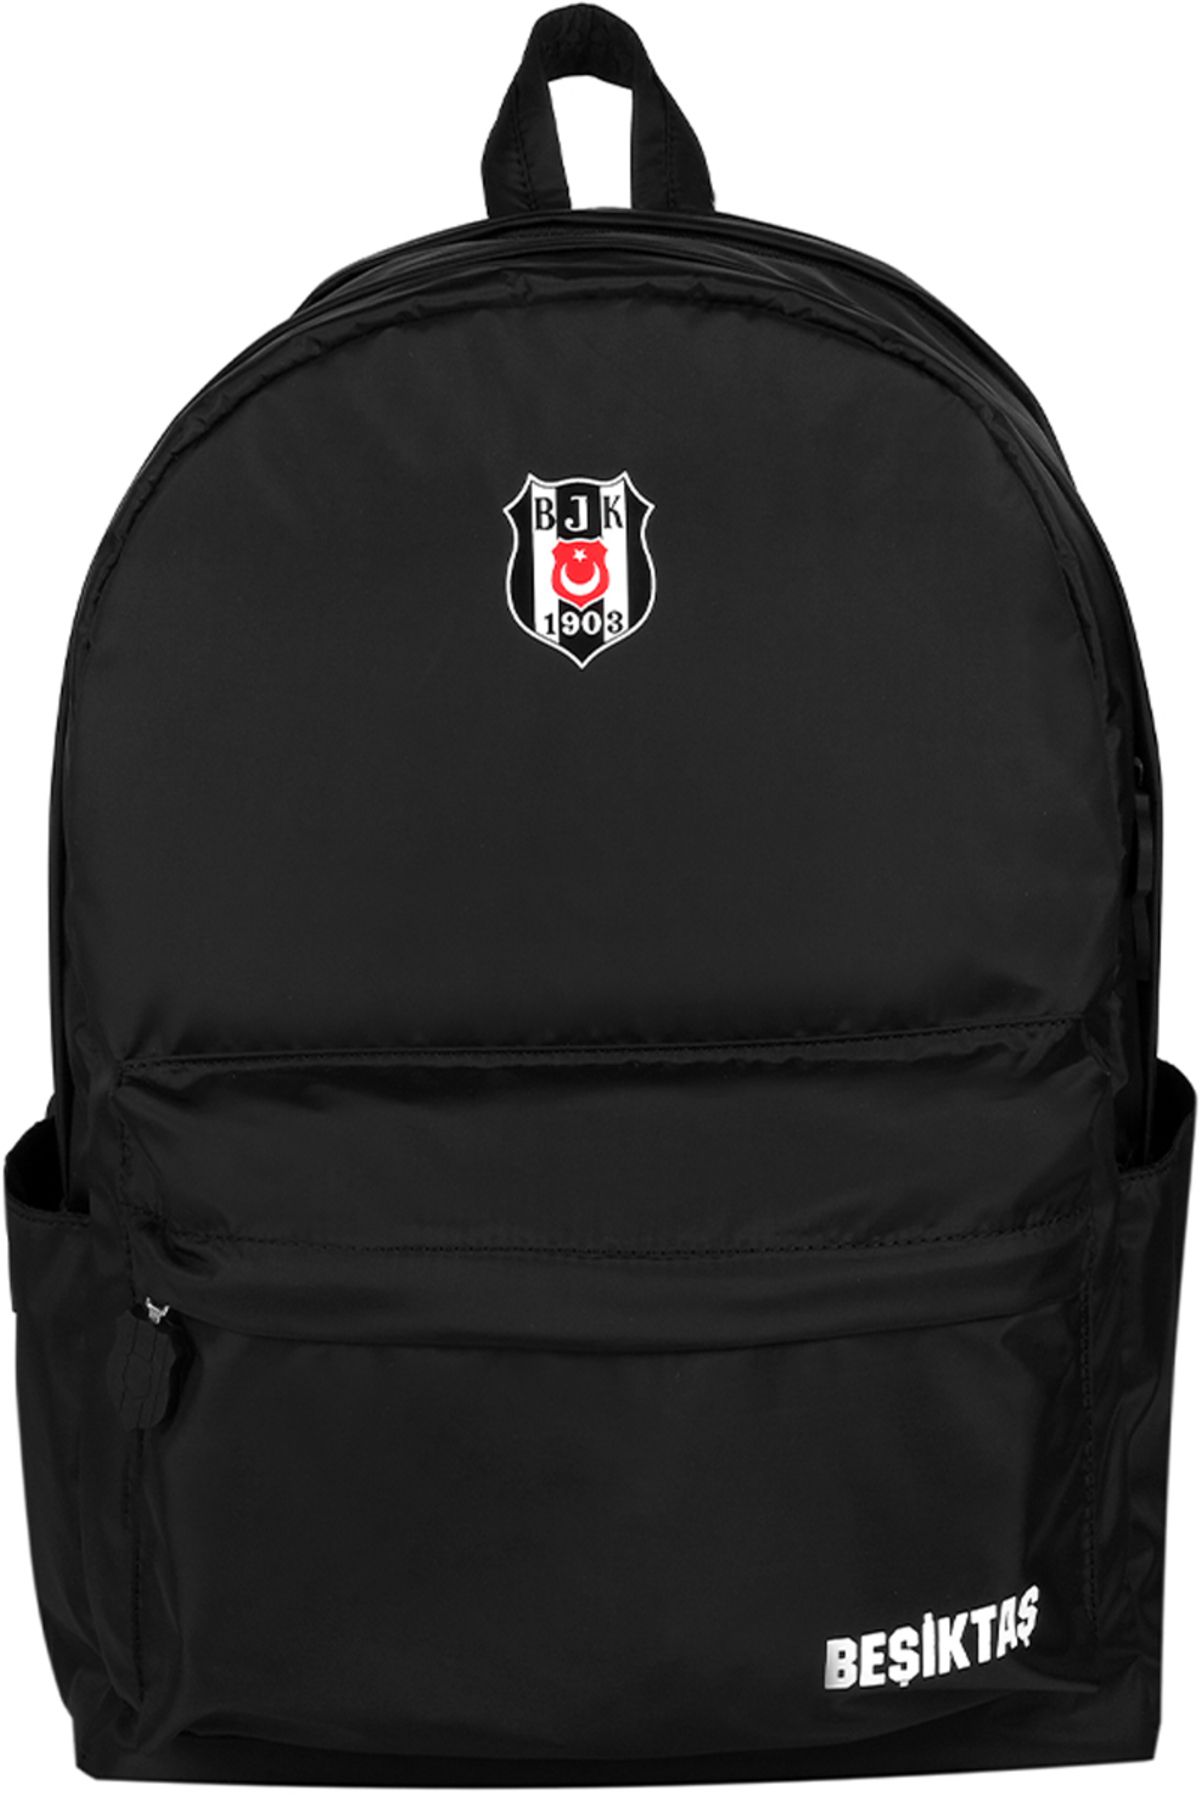 Beşiktaş Lisanslı BLACK BATİK Okul Sırt Çantası 24302 Siyah